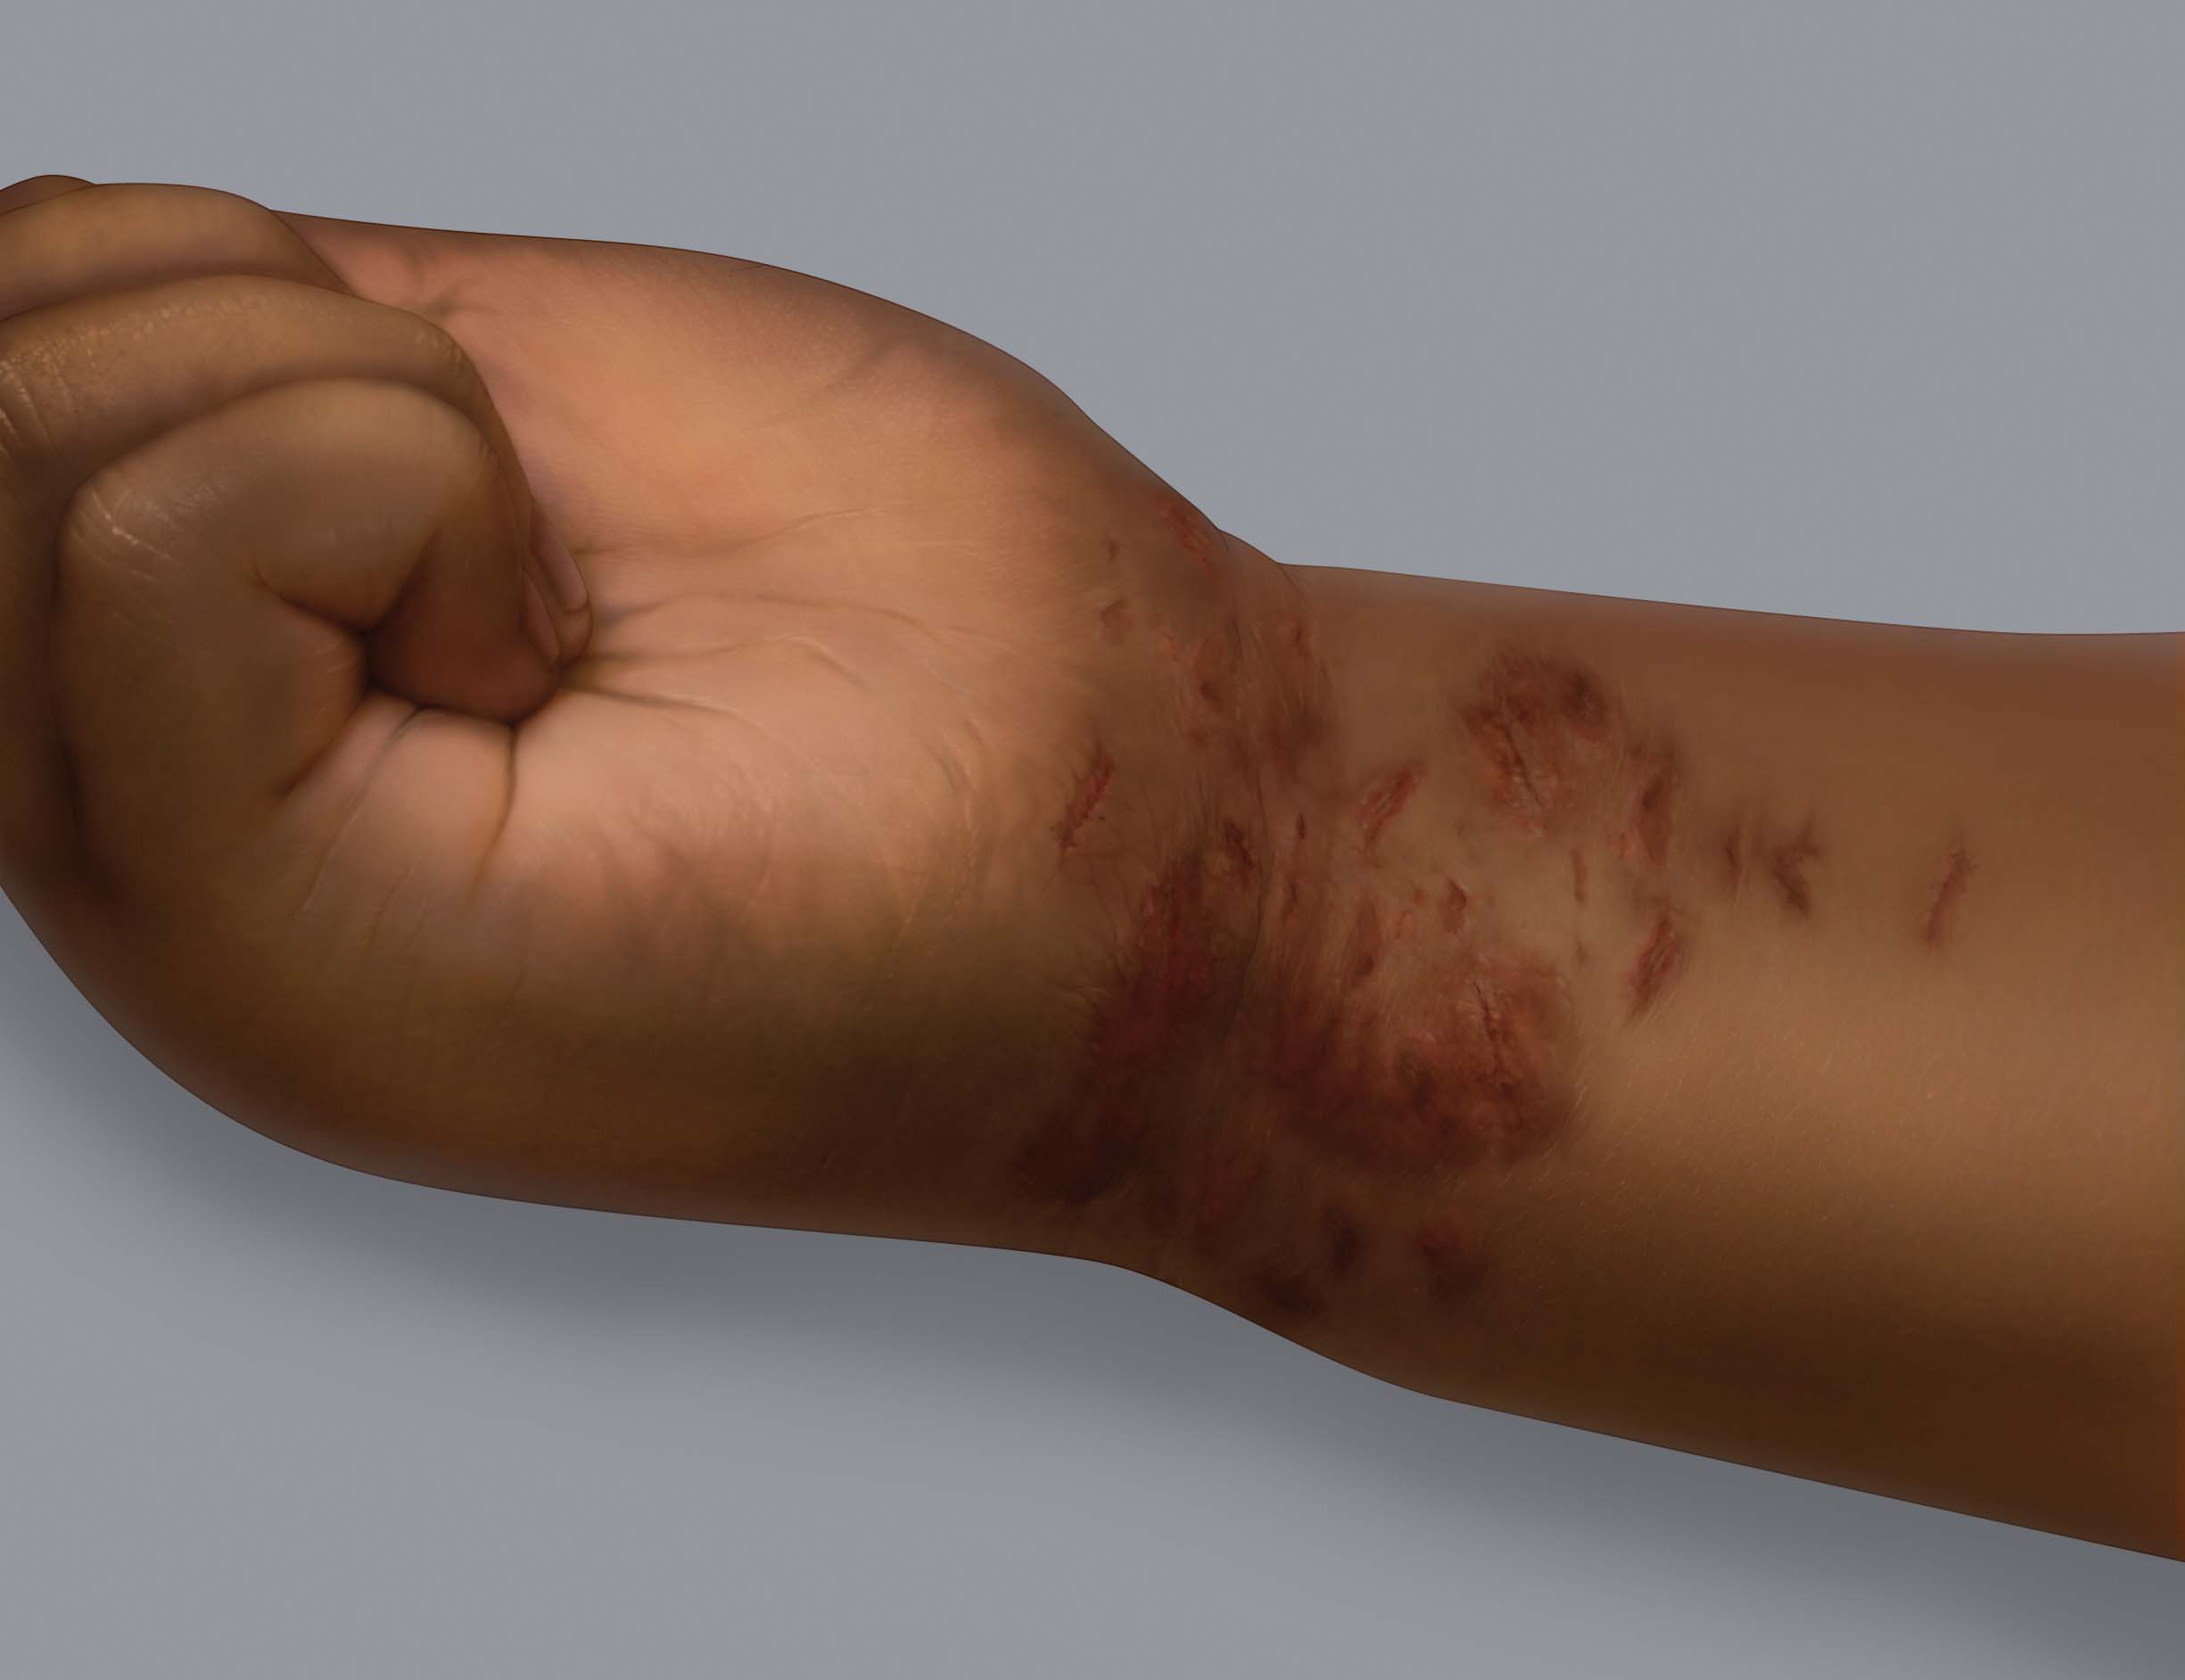 Symptoms of eczema on dark skin: scratch marks (excoriations)